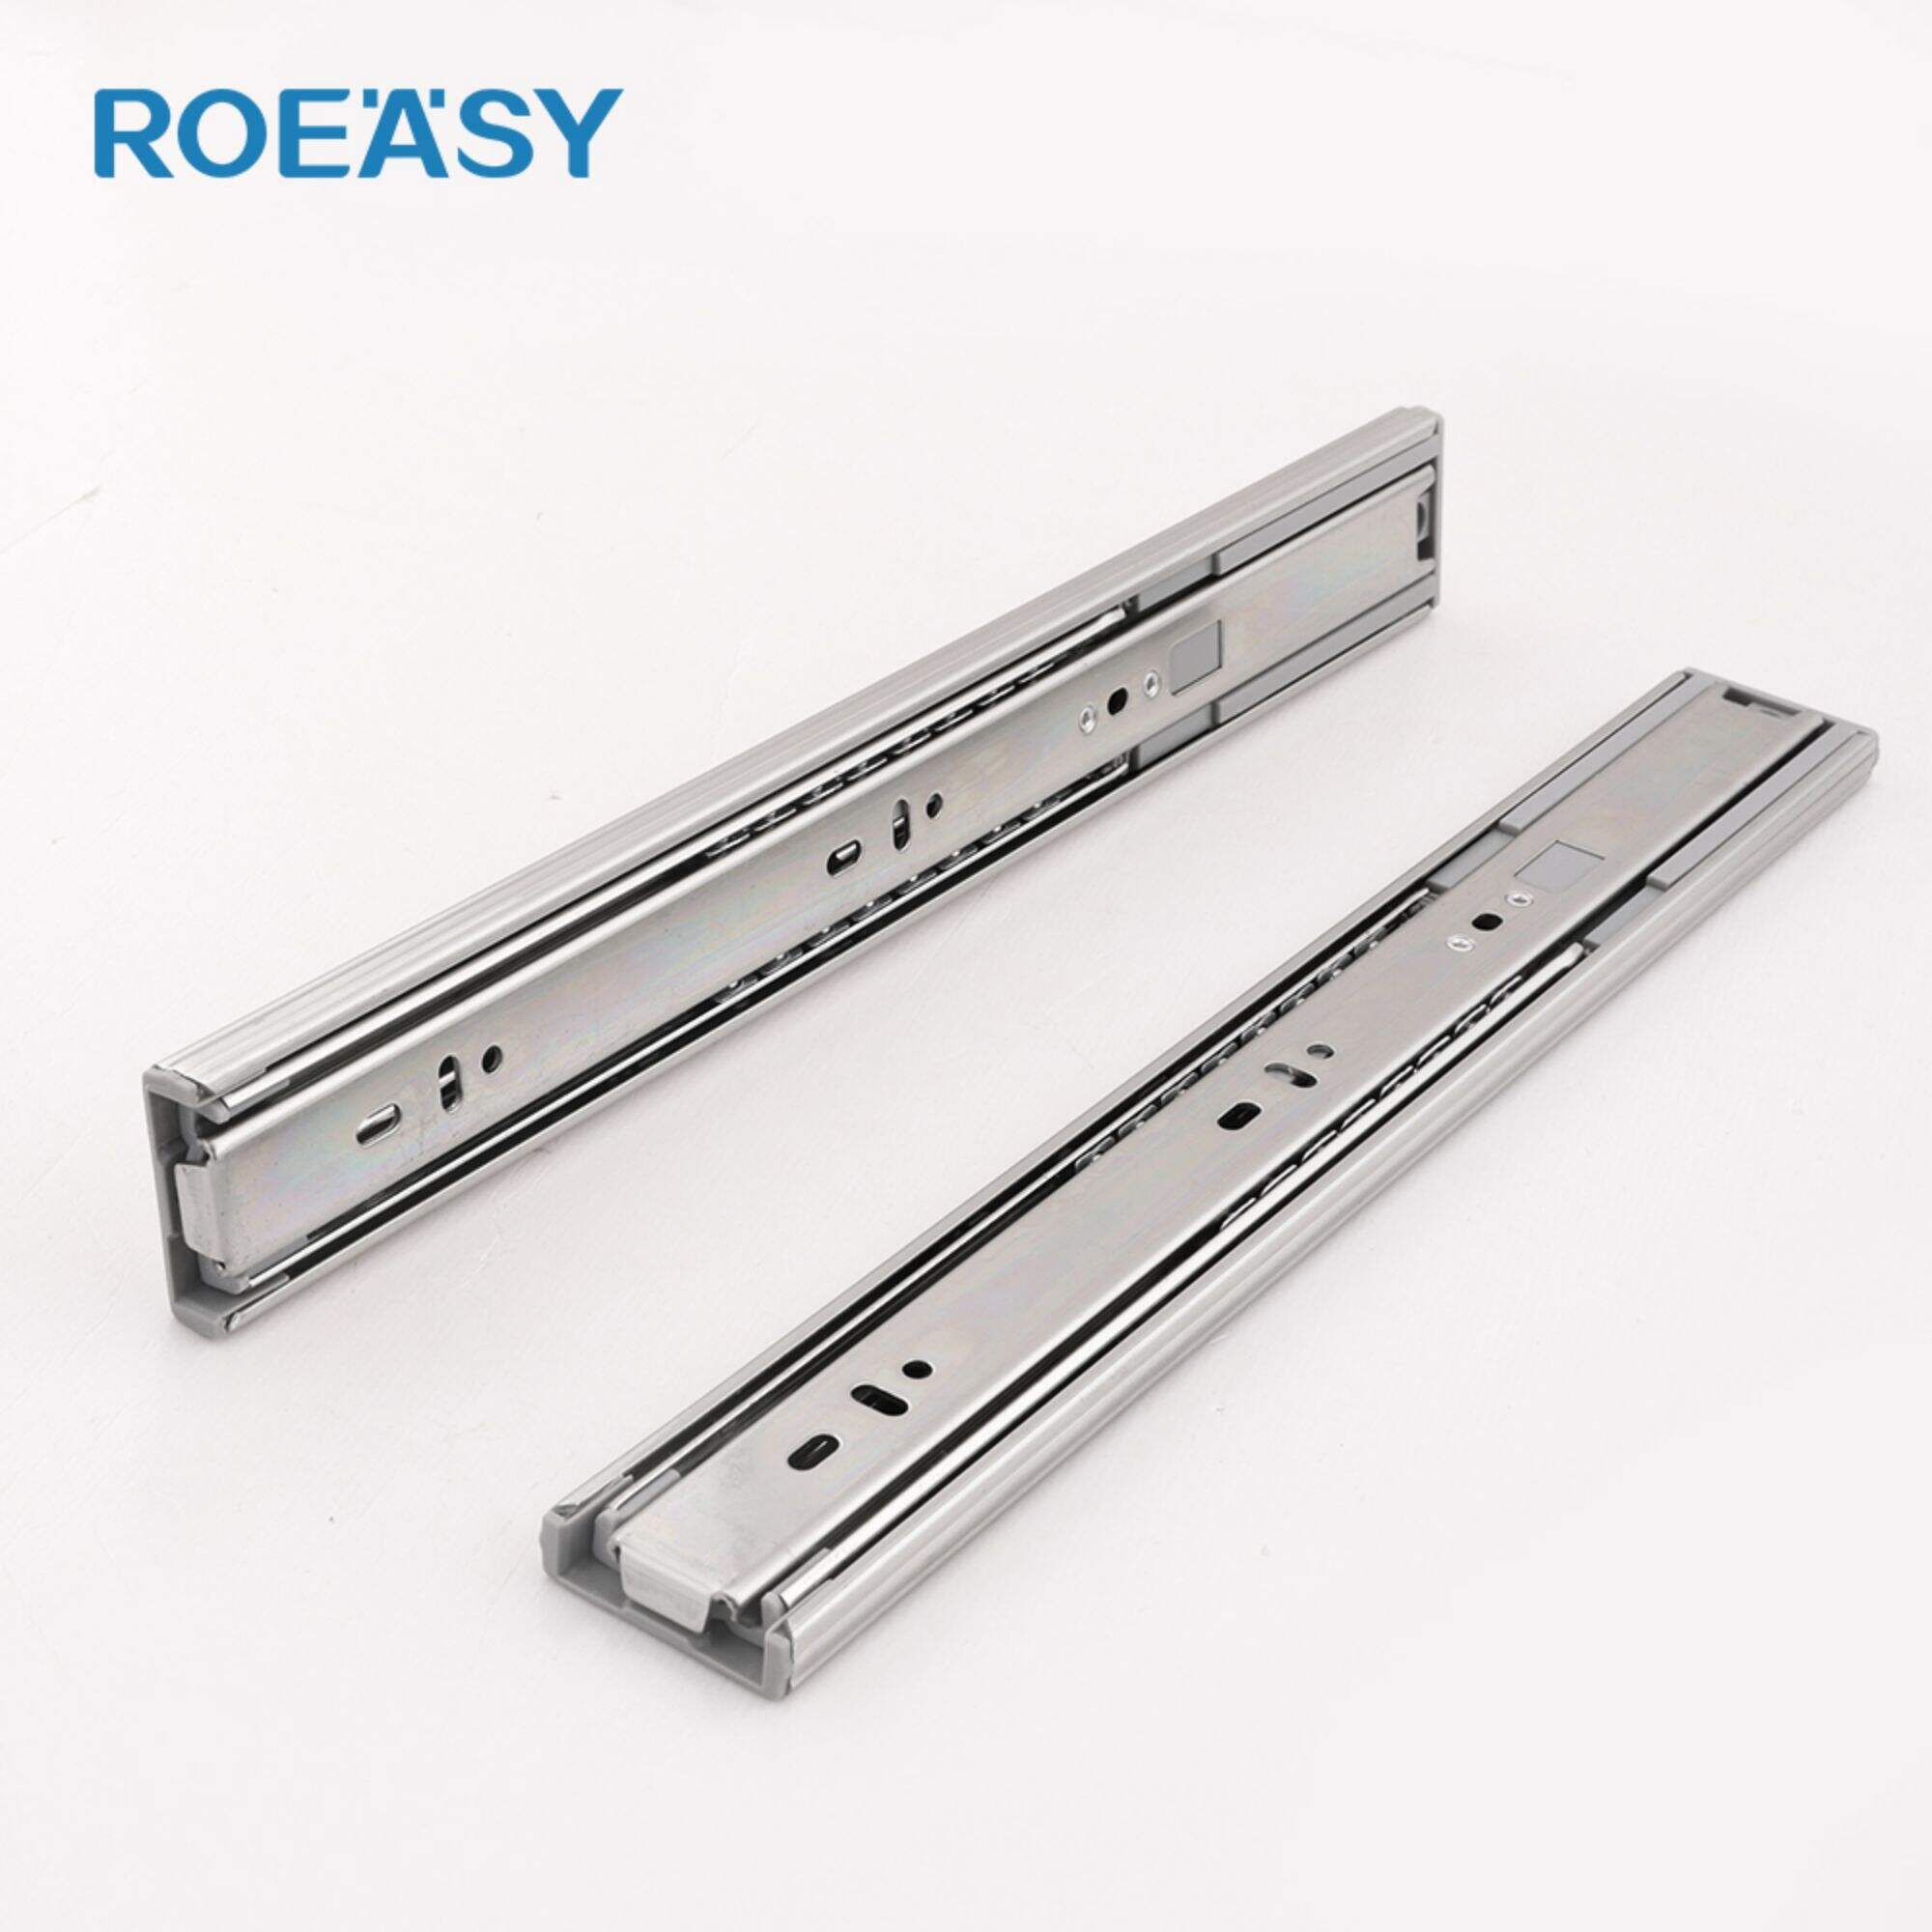 Roeasytelescópico gaveta trilho slides fabricantes para armário porta montagem gaveta do armário slide trilhos zinco